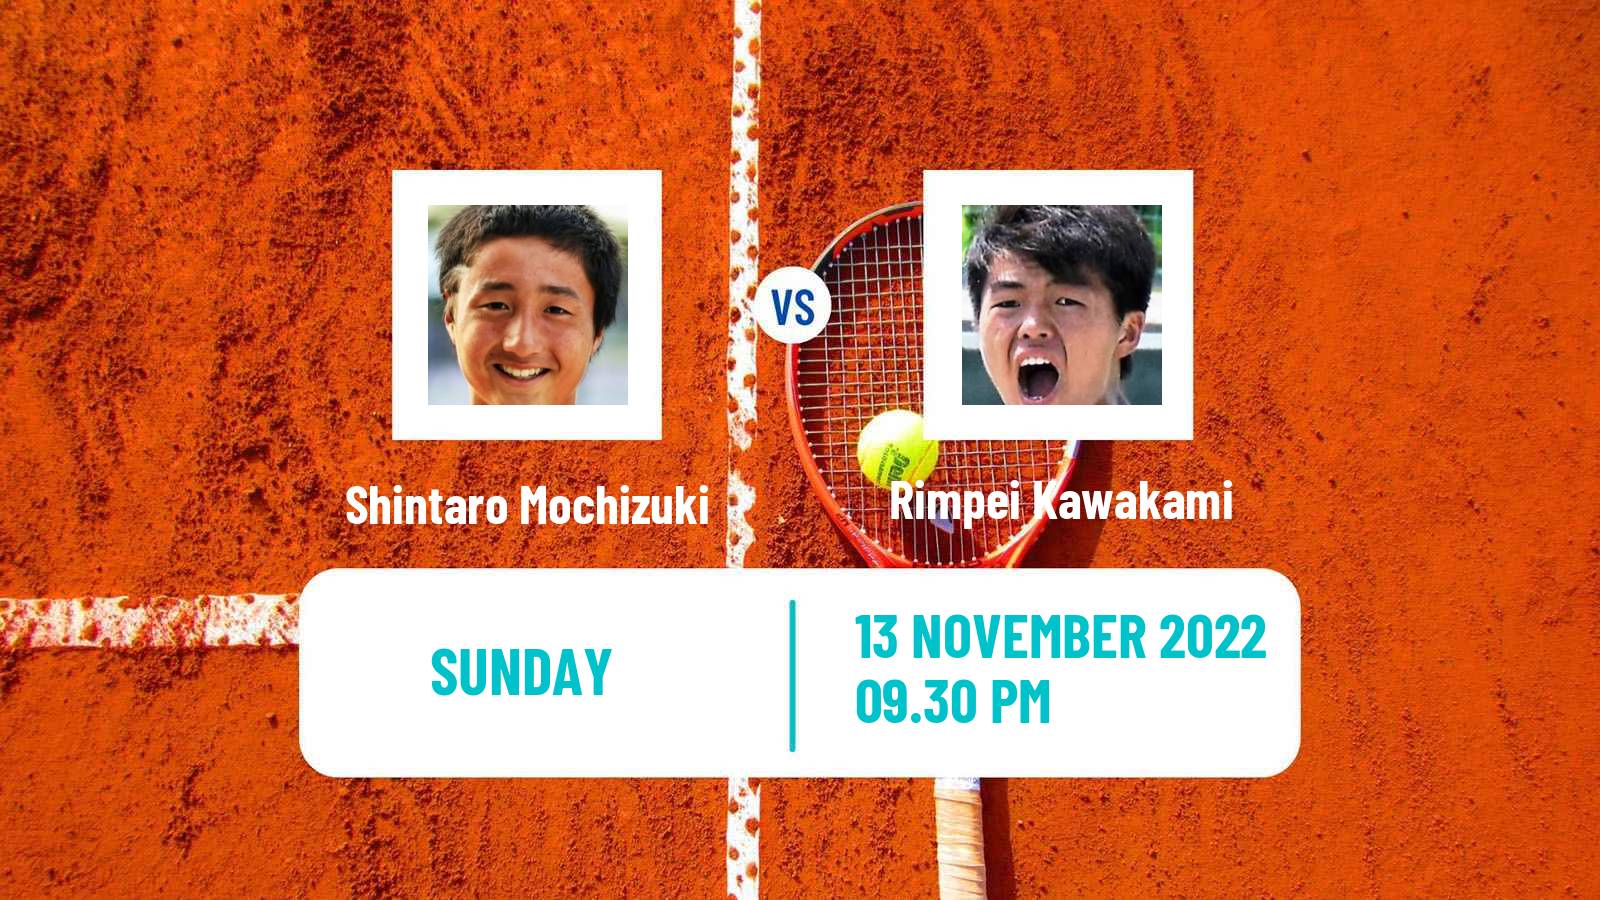 Tennis ATP Challenger Shintaro Mochizuki - Rimpei Kawakami